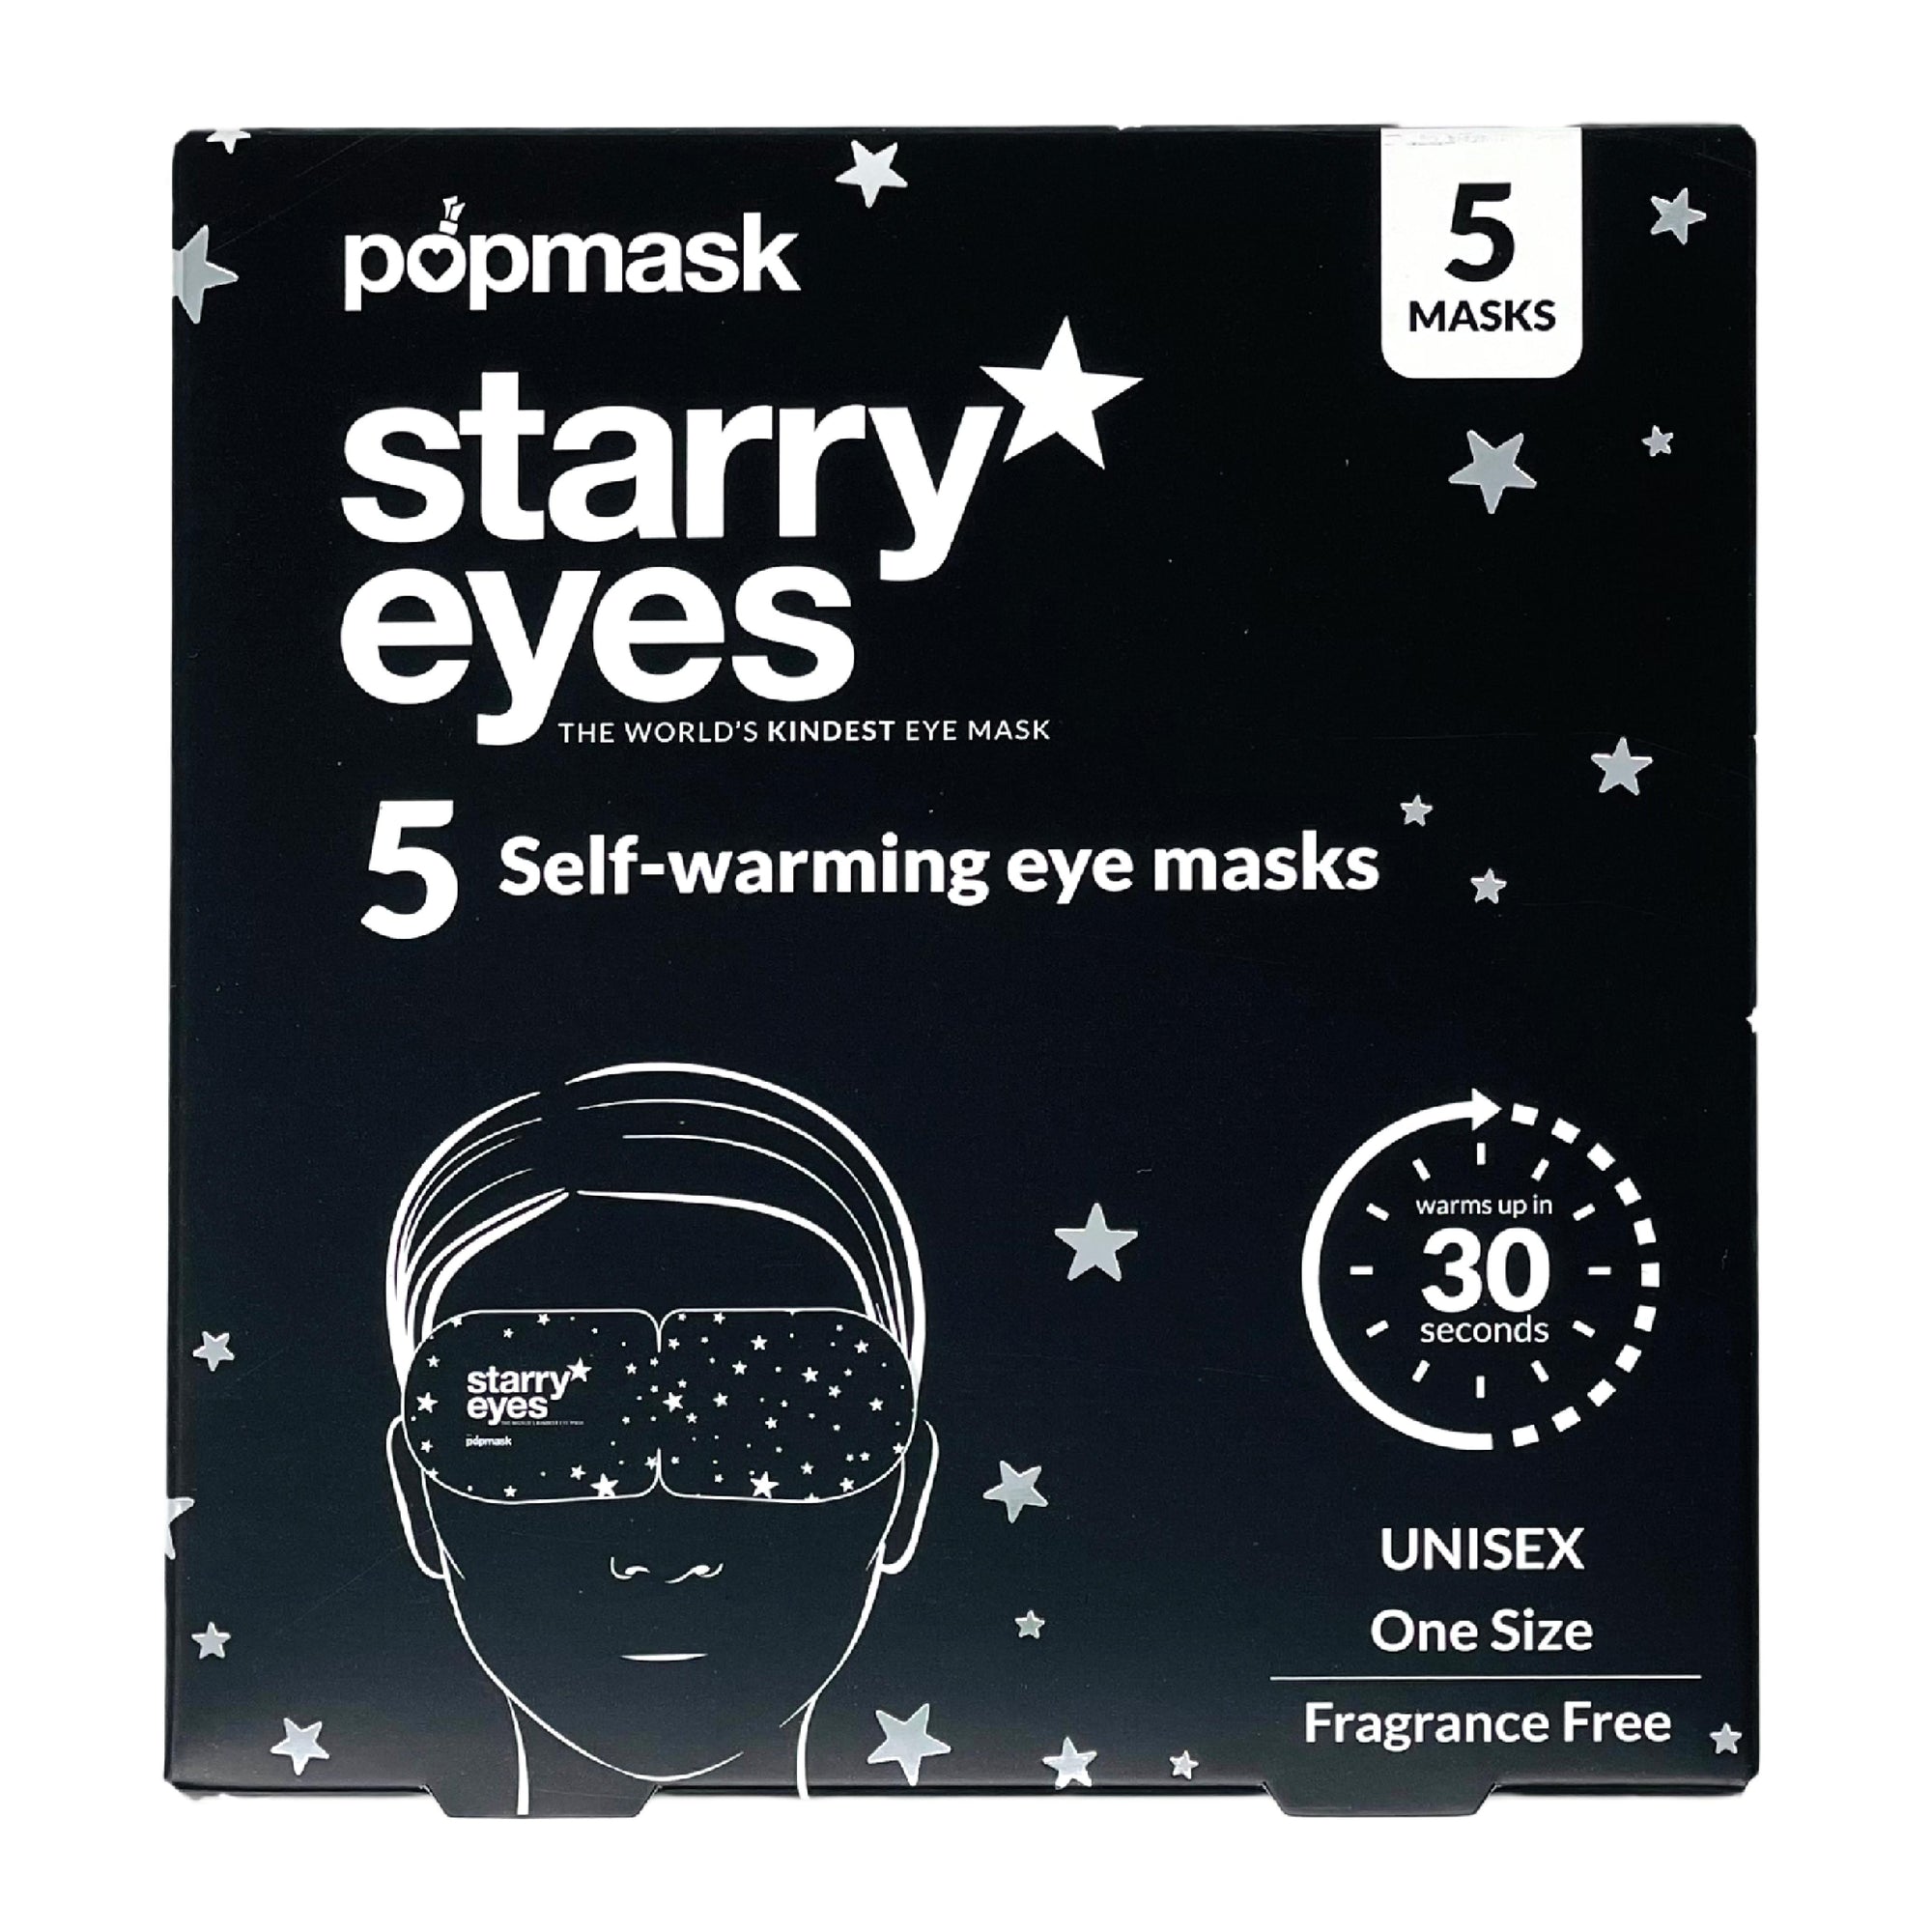 Popmask Starry Eyes Eyemask